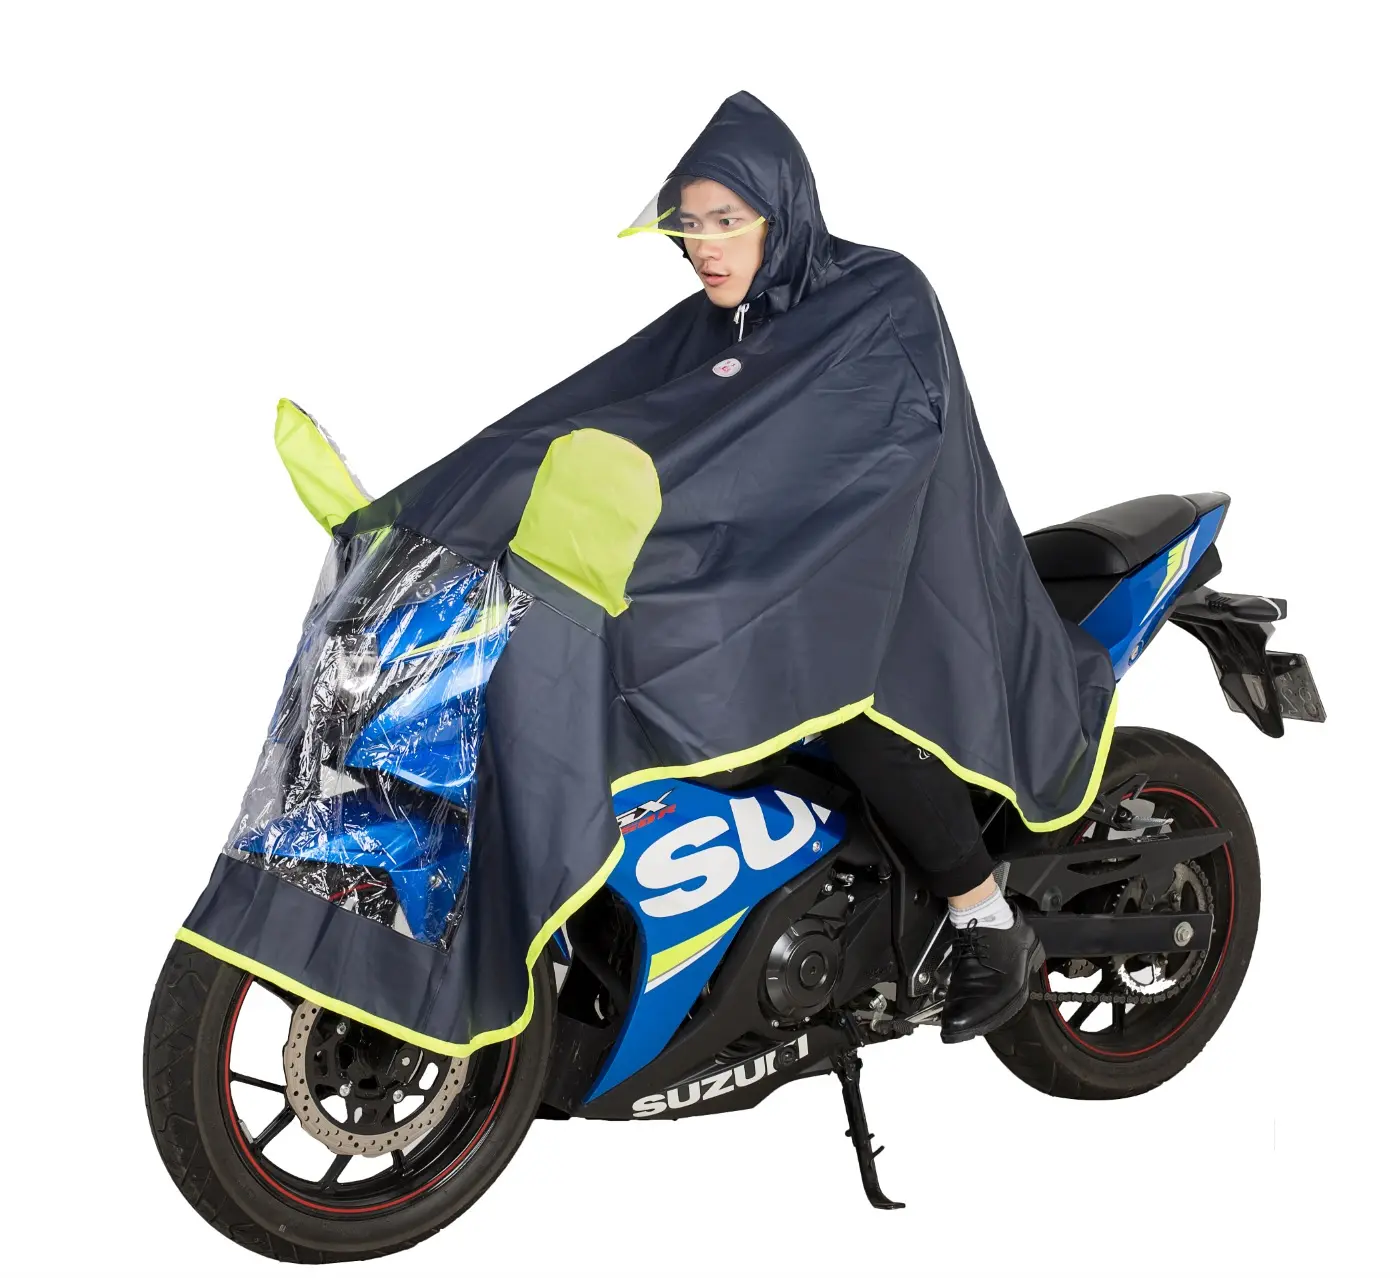 Sıcak satış tam vücut yağmur fırtınası önleme kadın erkek motosiklet sürme örme motosiklet panço